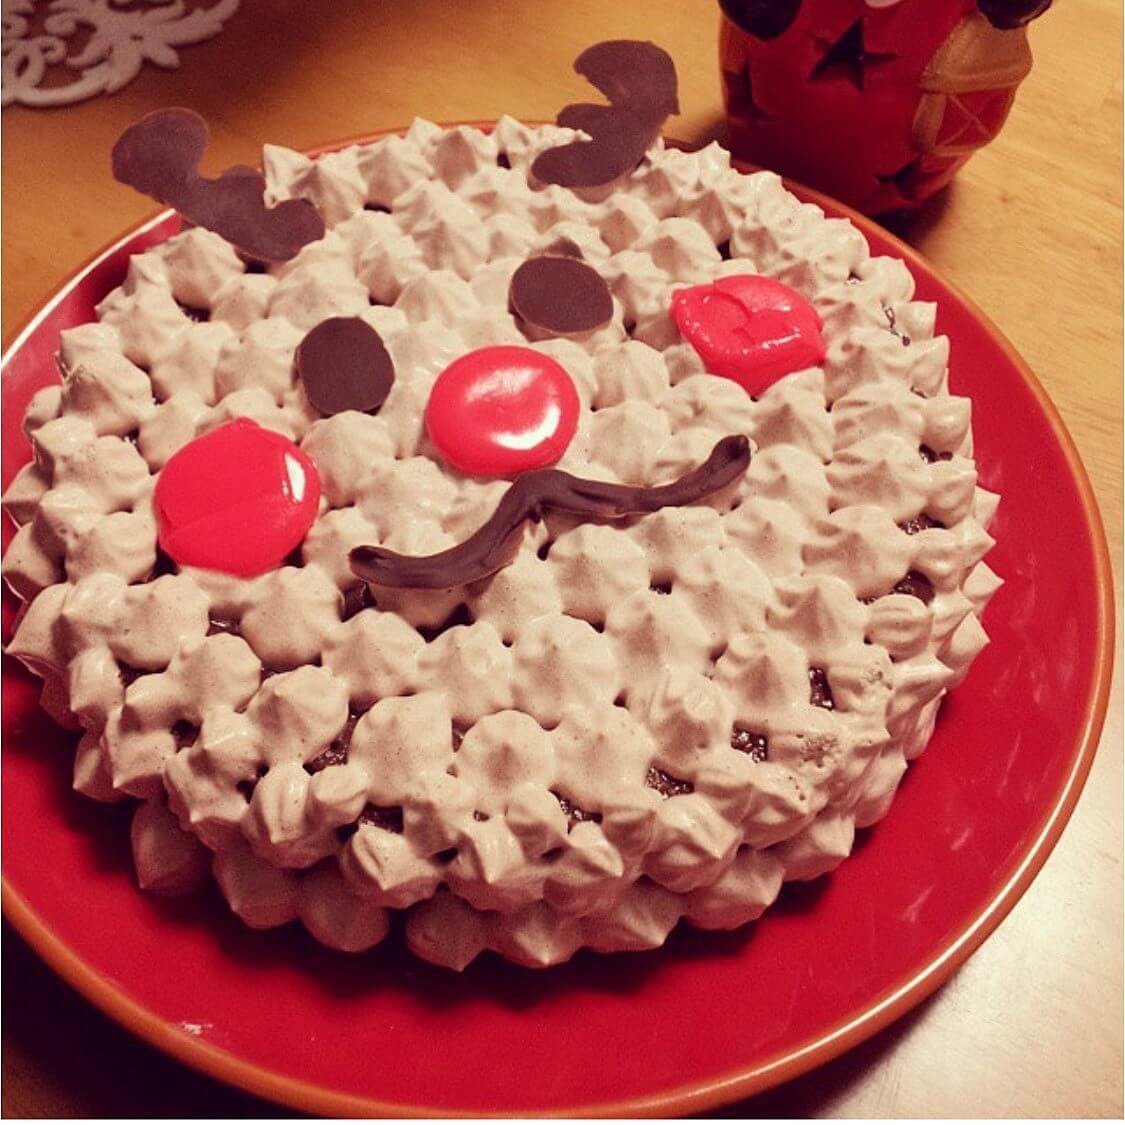 手作りクリスマスケーキのデコレーションアイデア 毎年作っているとクオリティも上達すること間違いなし ヨムーノ